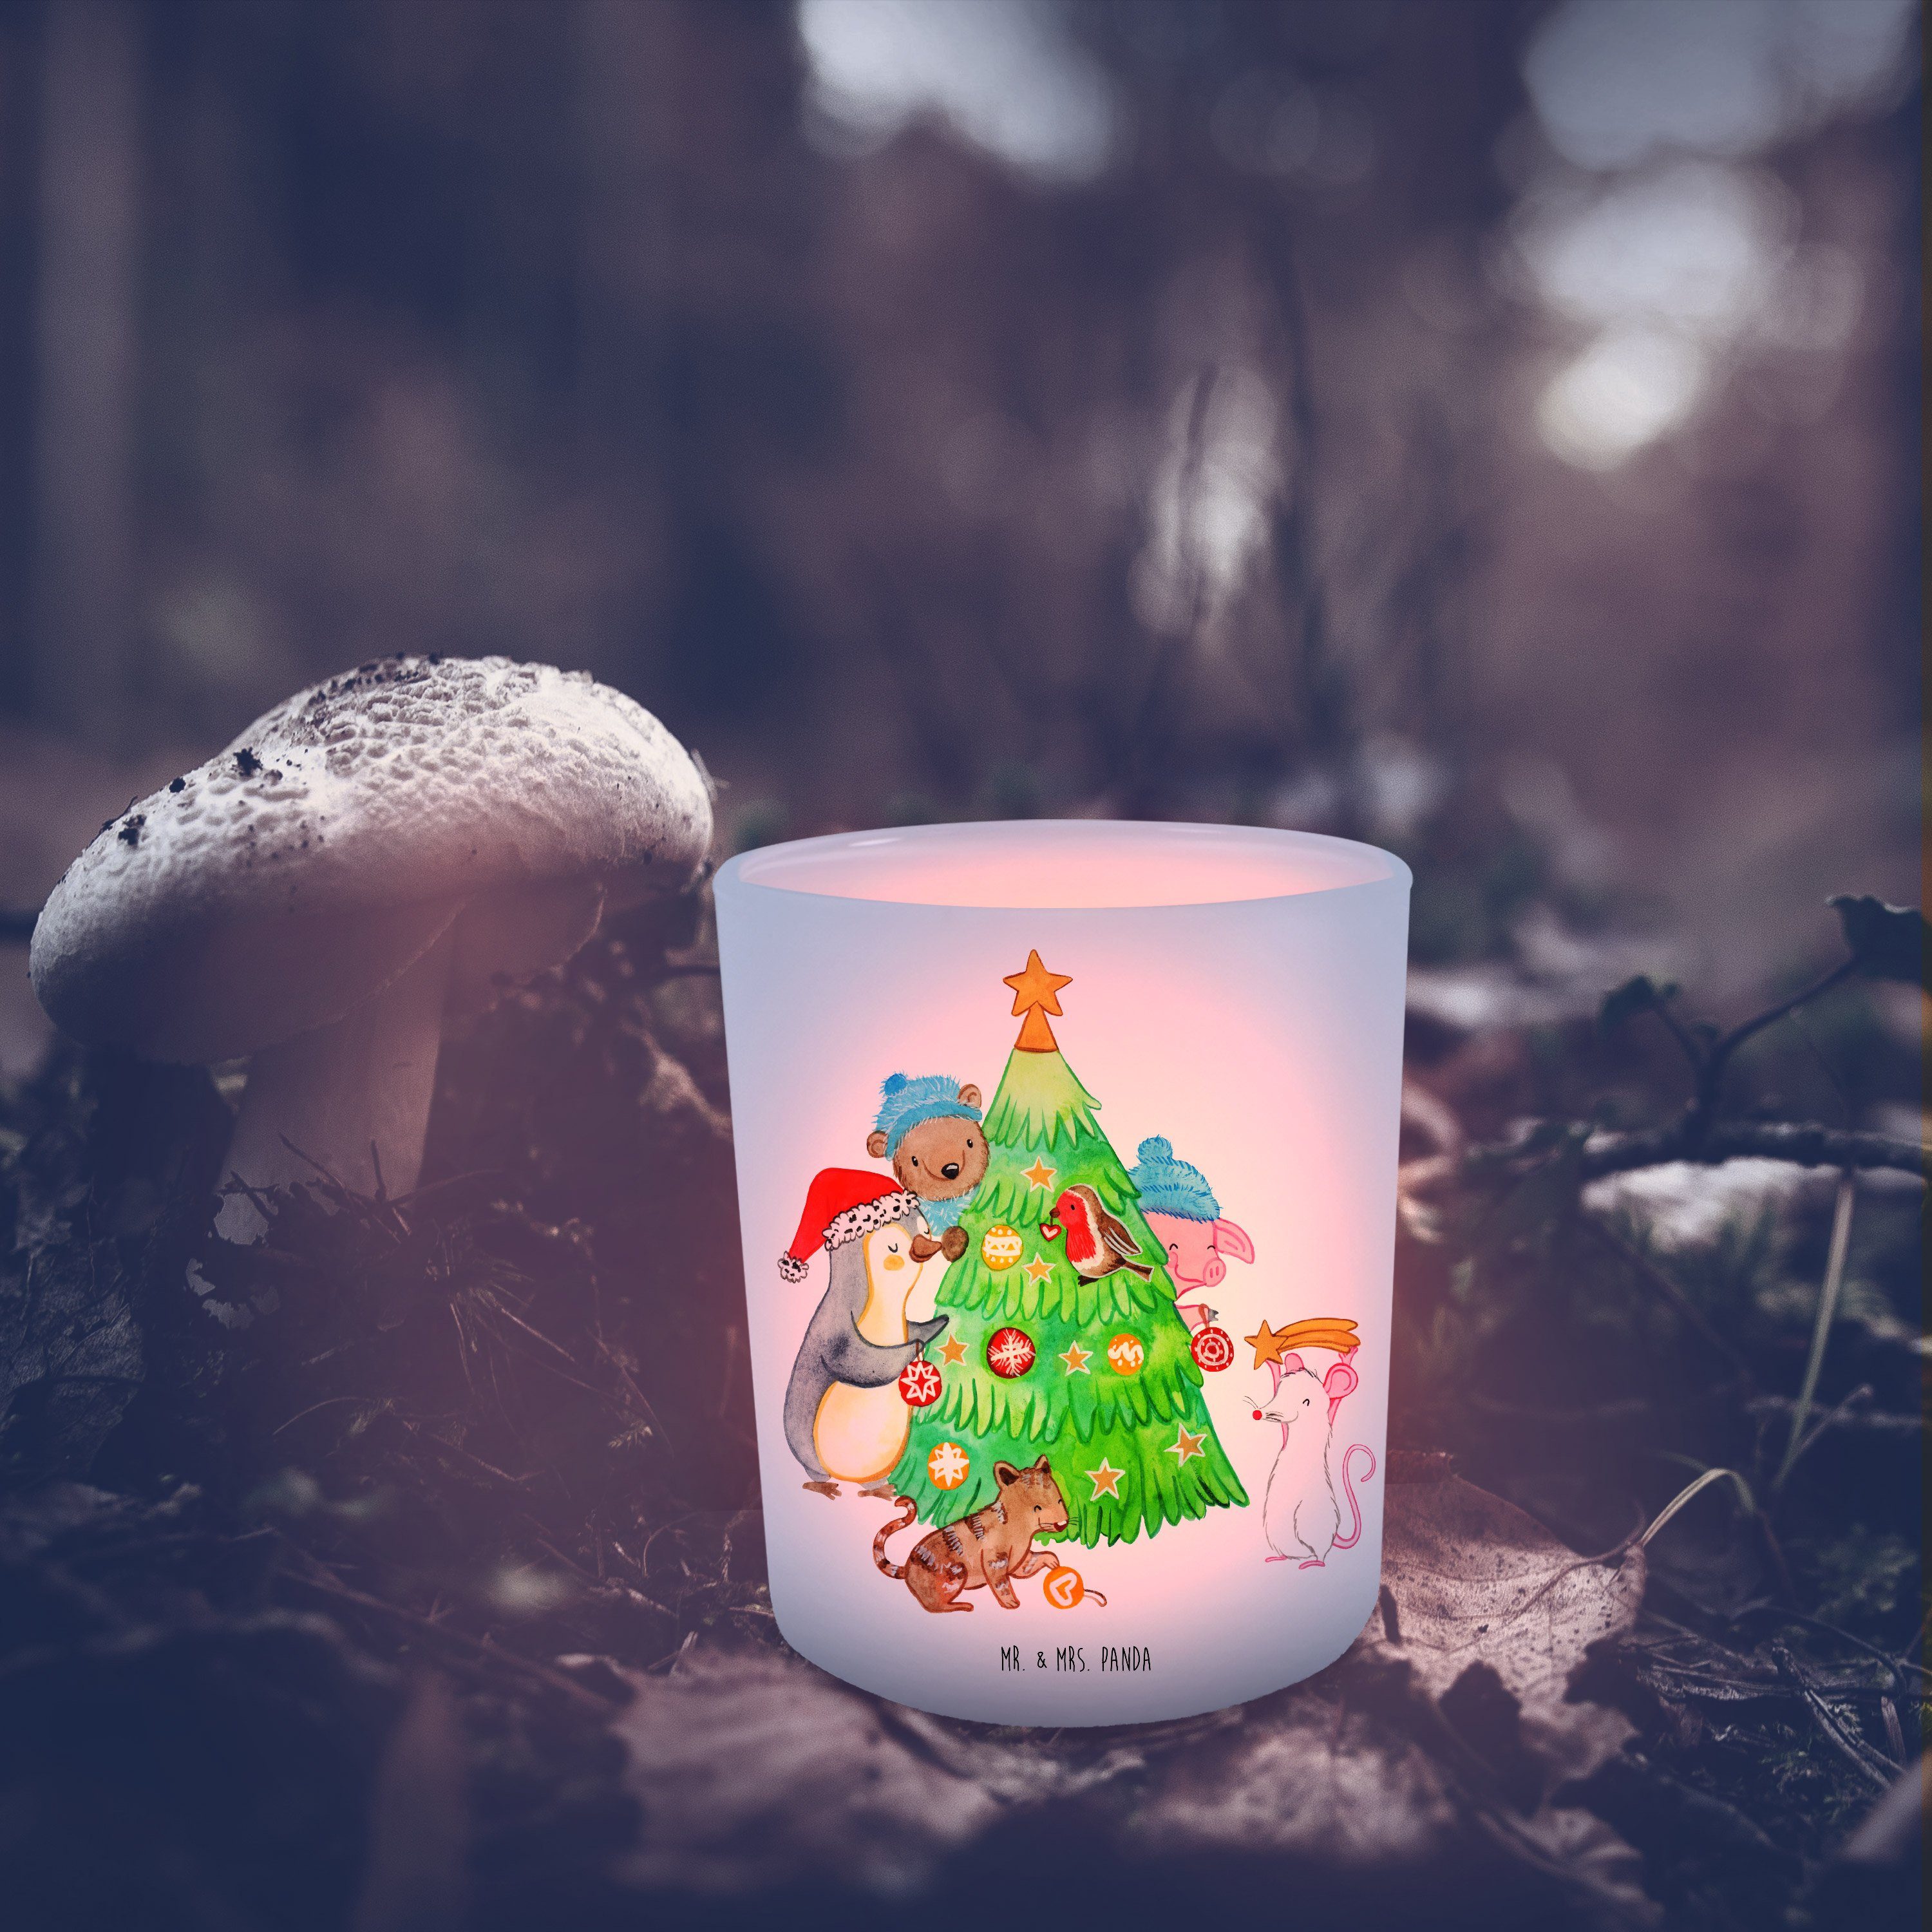 Mr. & Mrs. Panda Windlicht Weihnachtsbaum schmücken - Transparent - Geschenk, Advent, Windlicht (1 St)